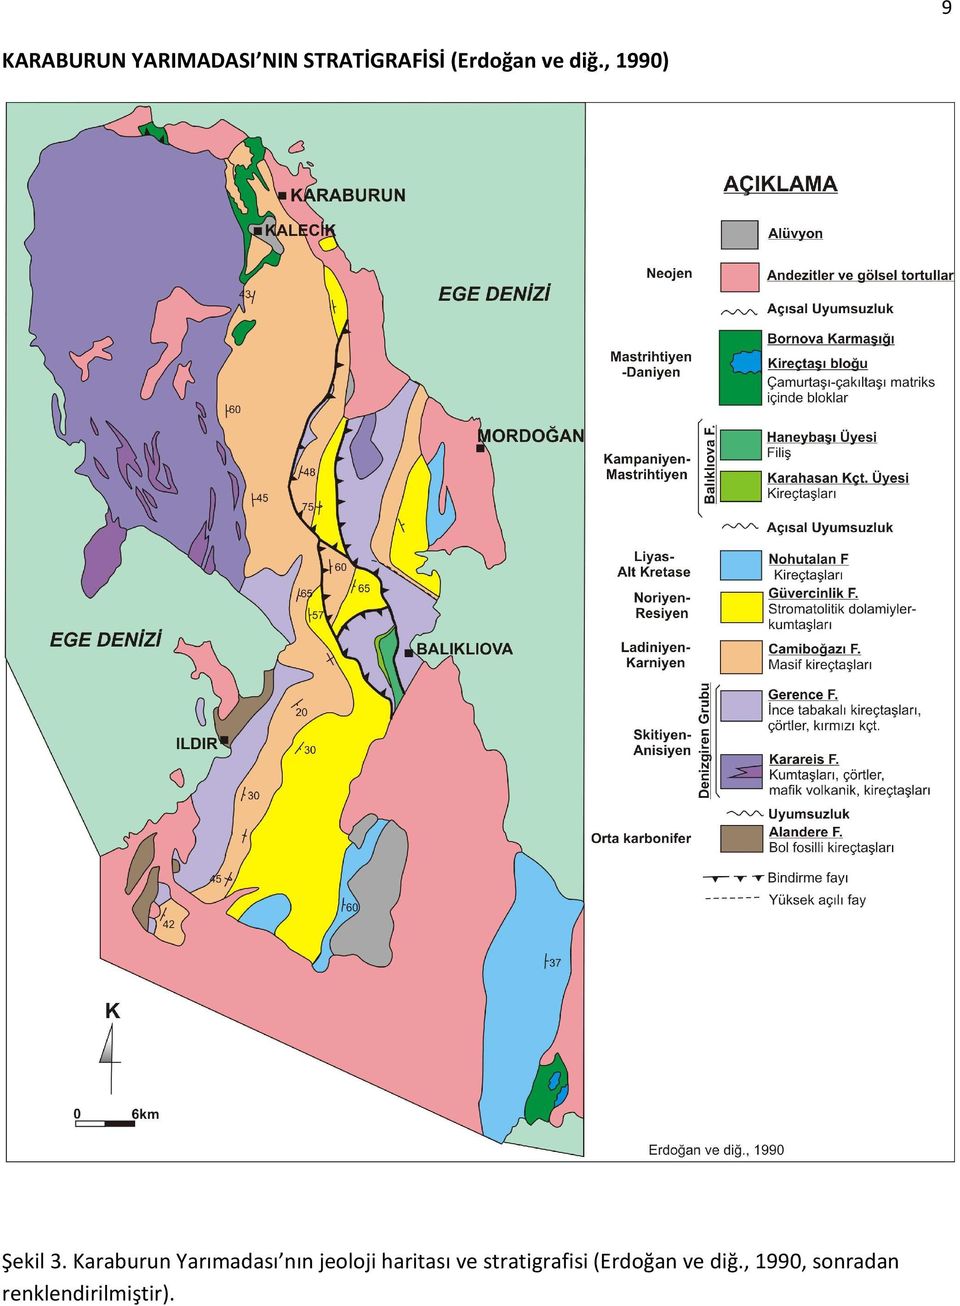 Karaburun Yarımadası nın jeoloji haritası ve